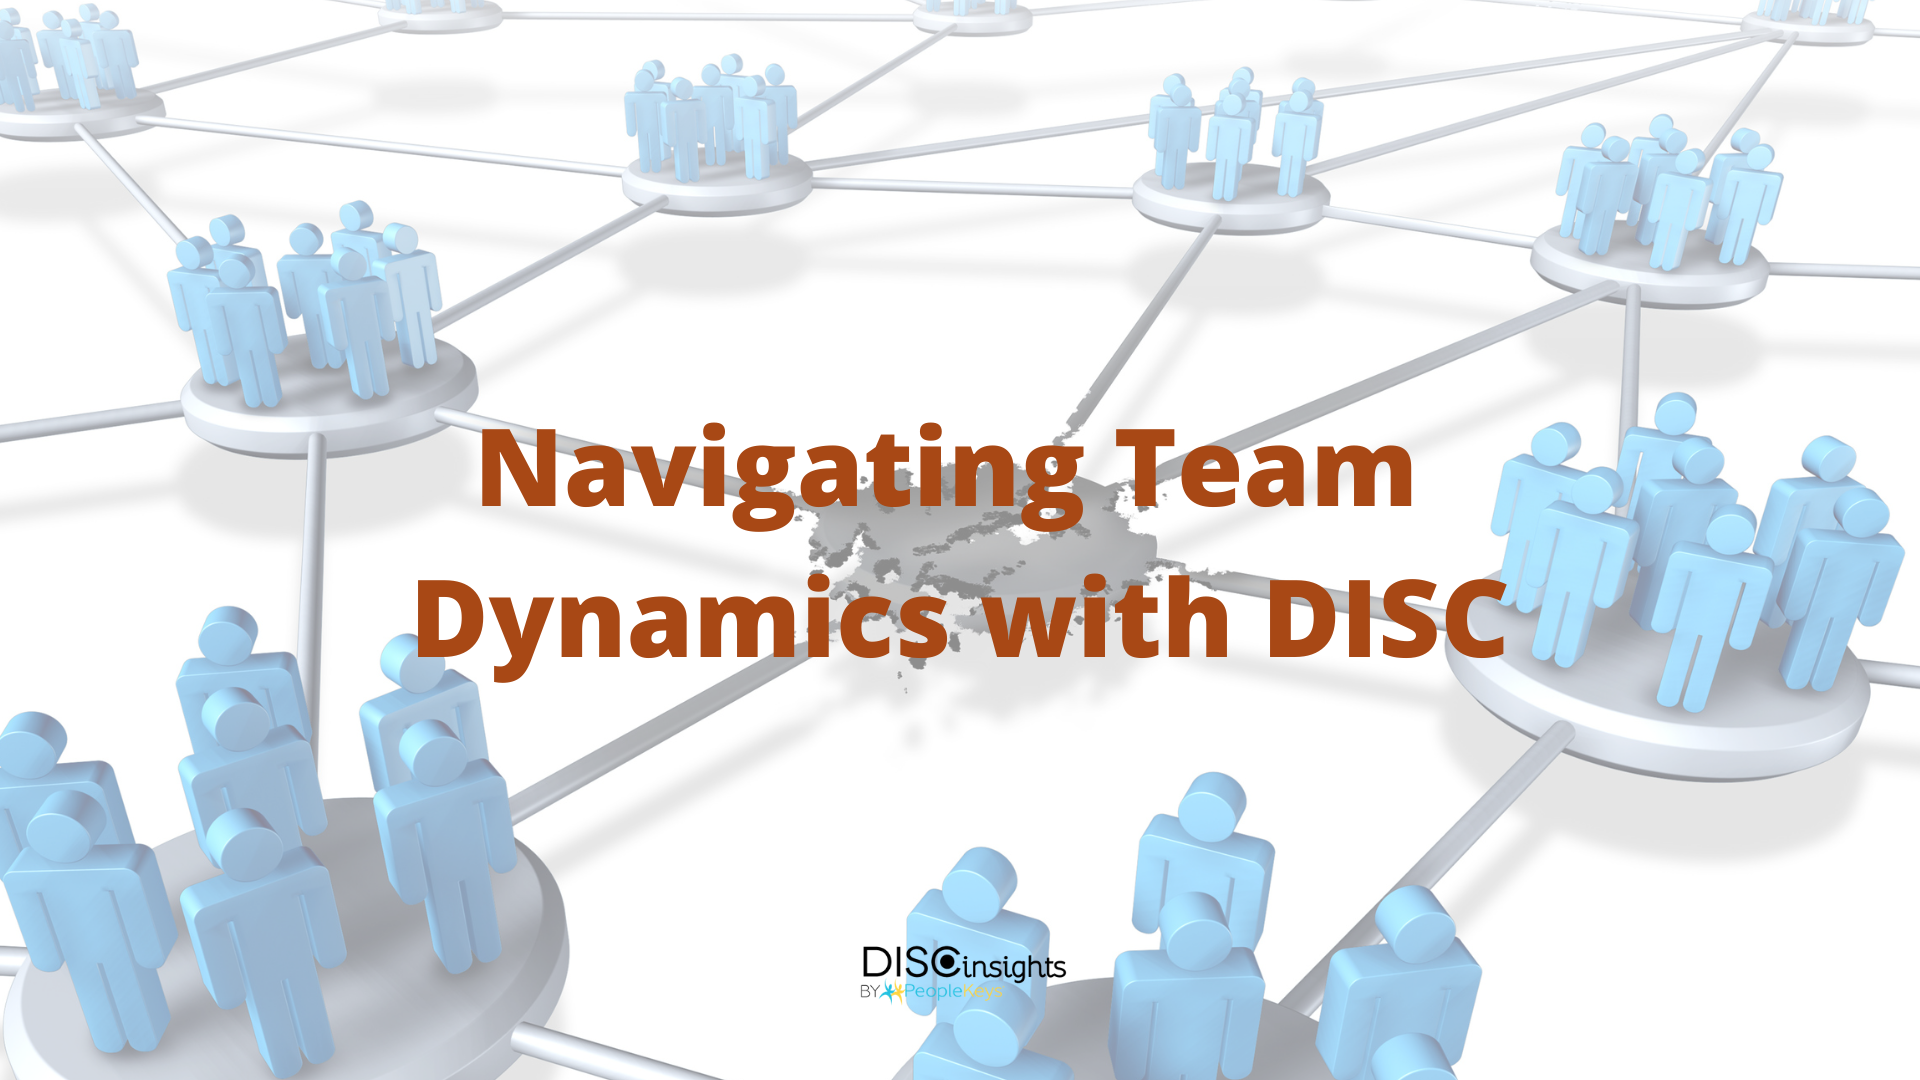 DISC Team Dynamics